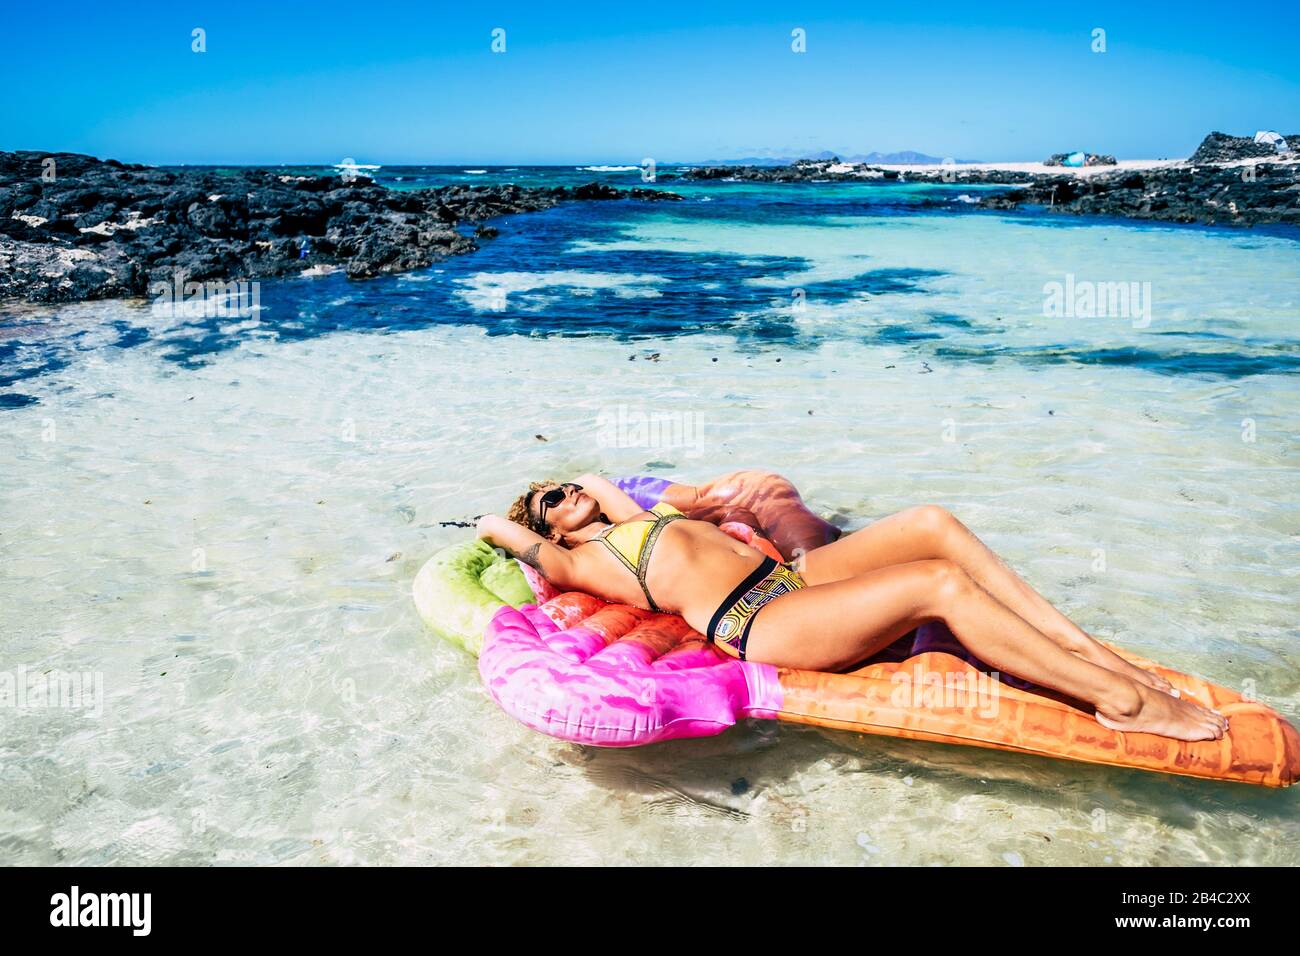 Belle jeune femme ont bain de soleil se détendre sur un matelas gonflable lilo branché dans un lagon bleu tropical avec sable et rochers - paradis et concept de paradis pour le voyage et le style de vie Banque D'Images